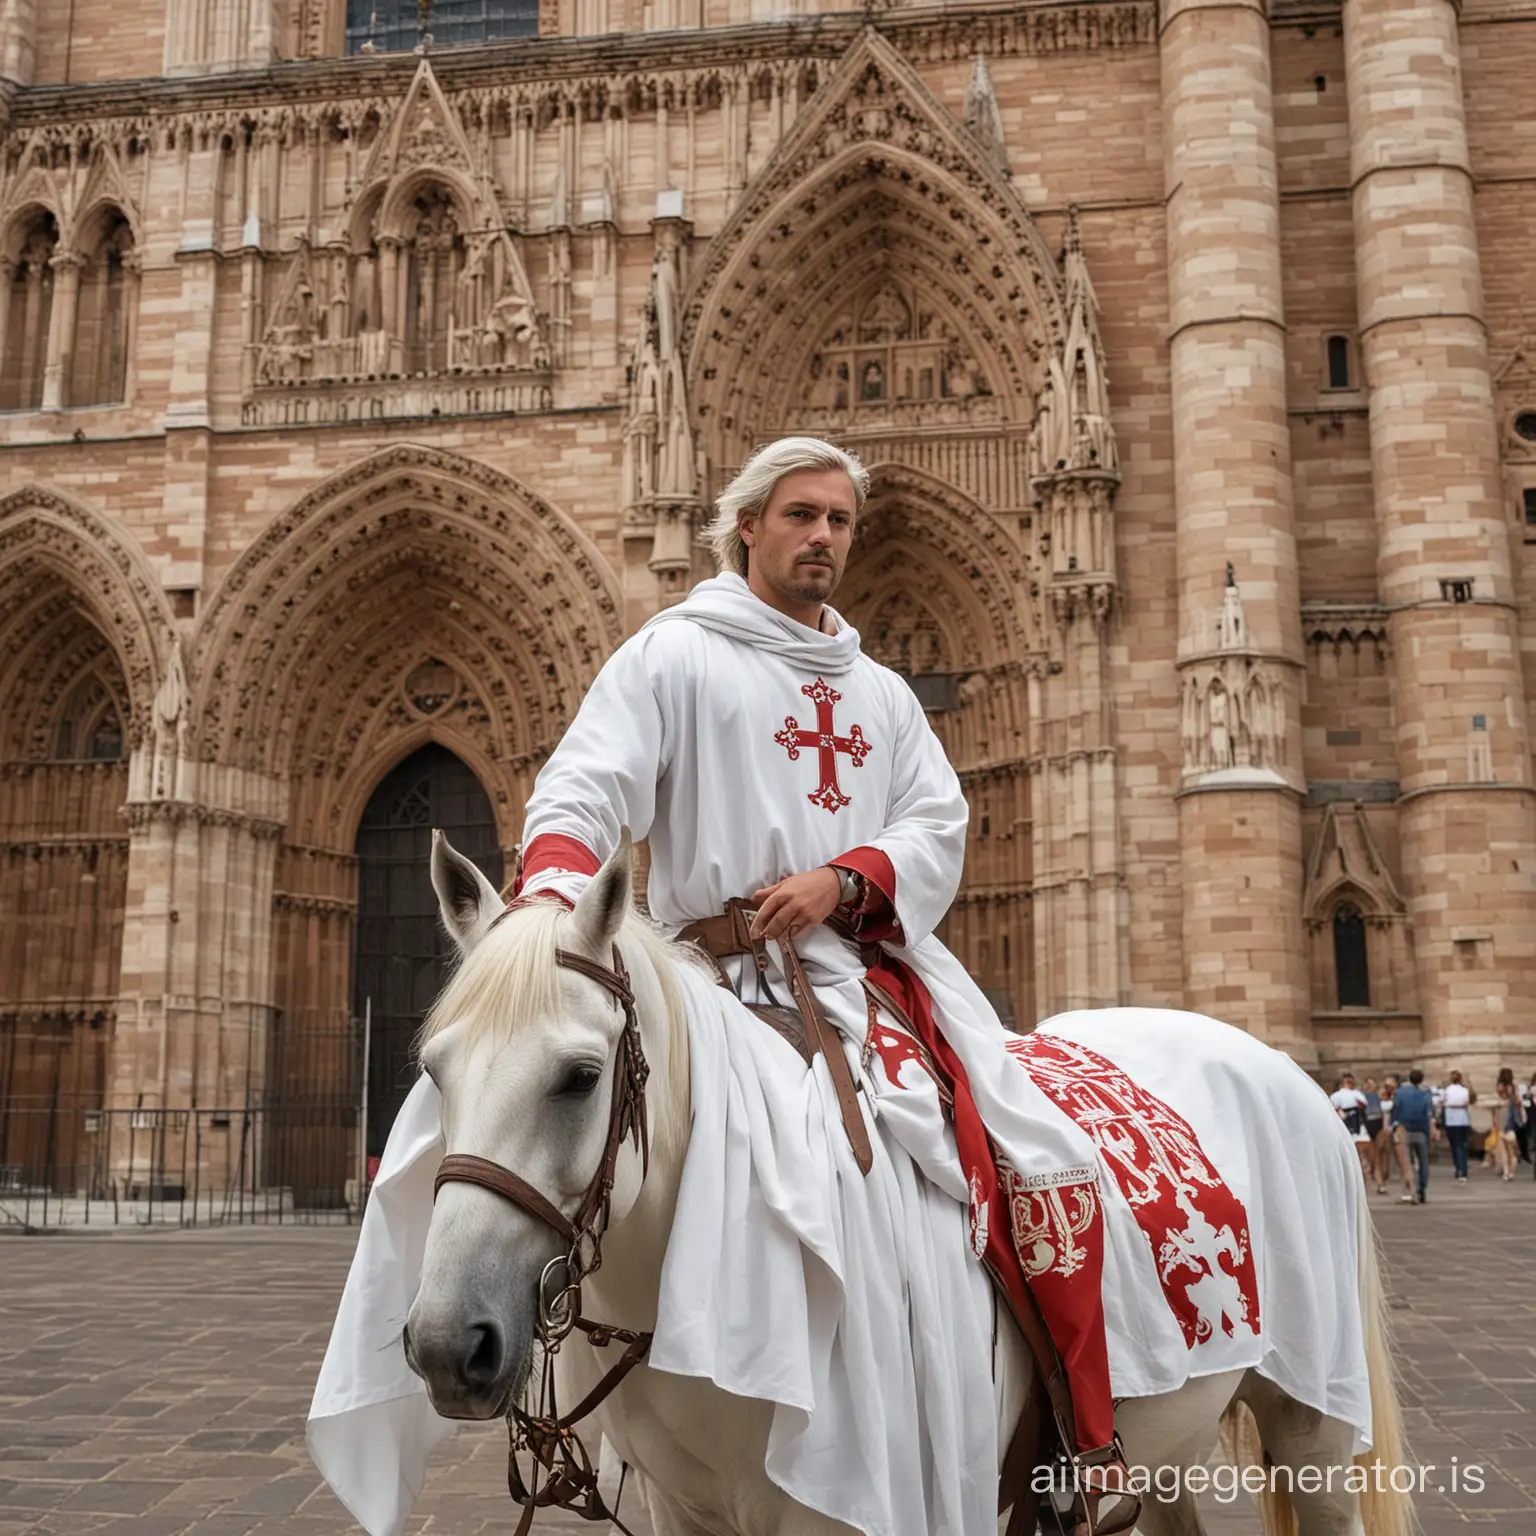 un chevalier cathare sur son cheval devant la cathédrale d'albi, en habit blanc avec une croix occitane